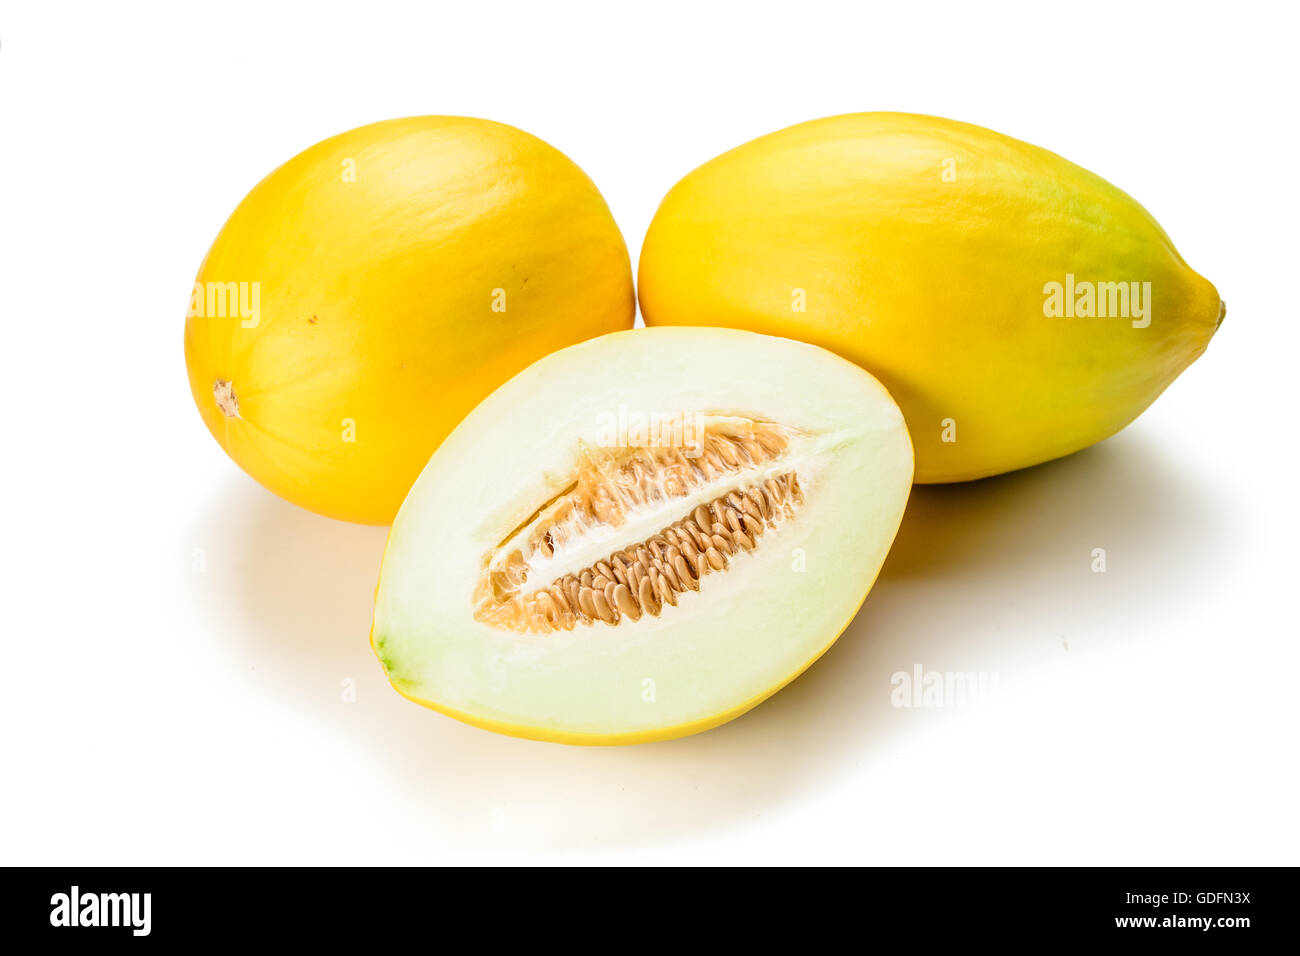 yellow melon on the white background. Stock Photo